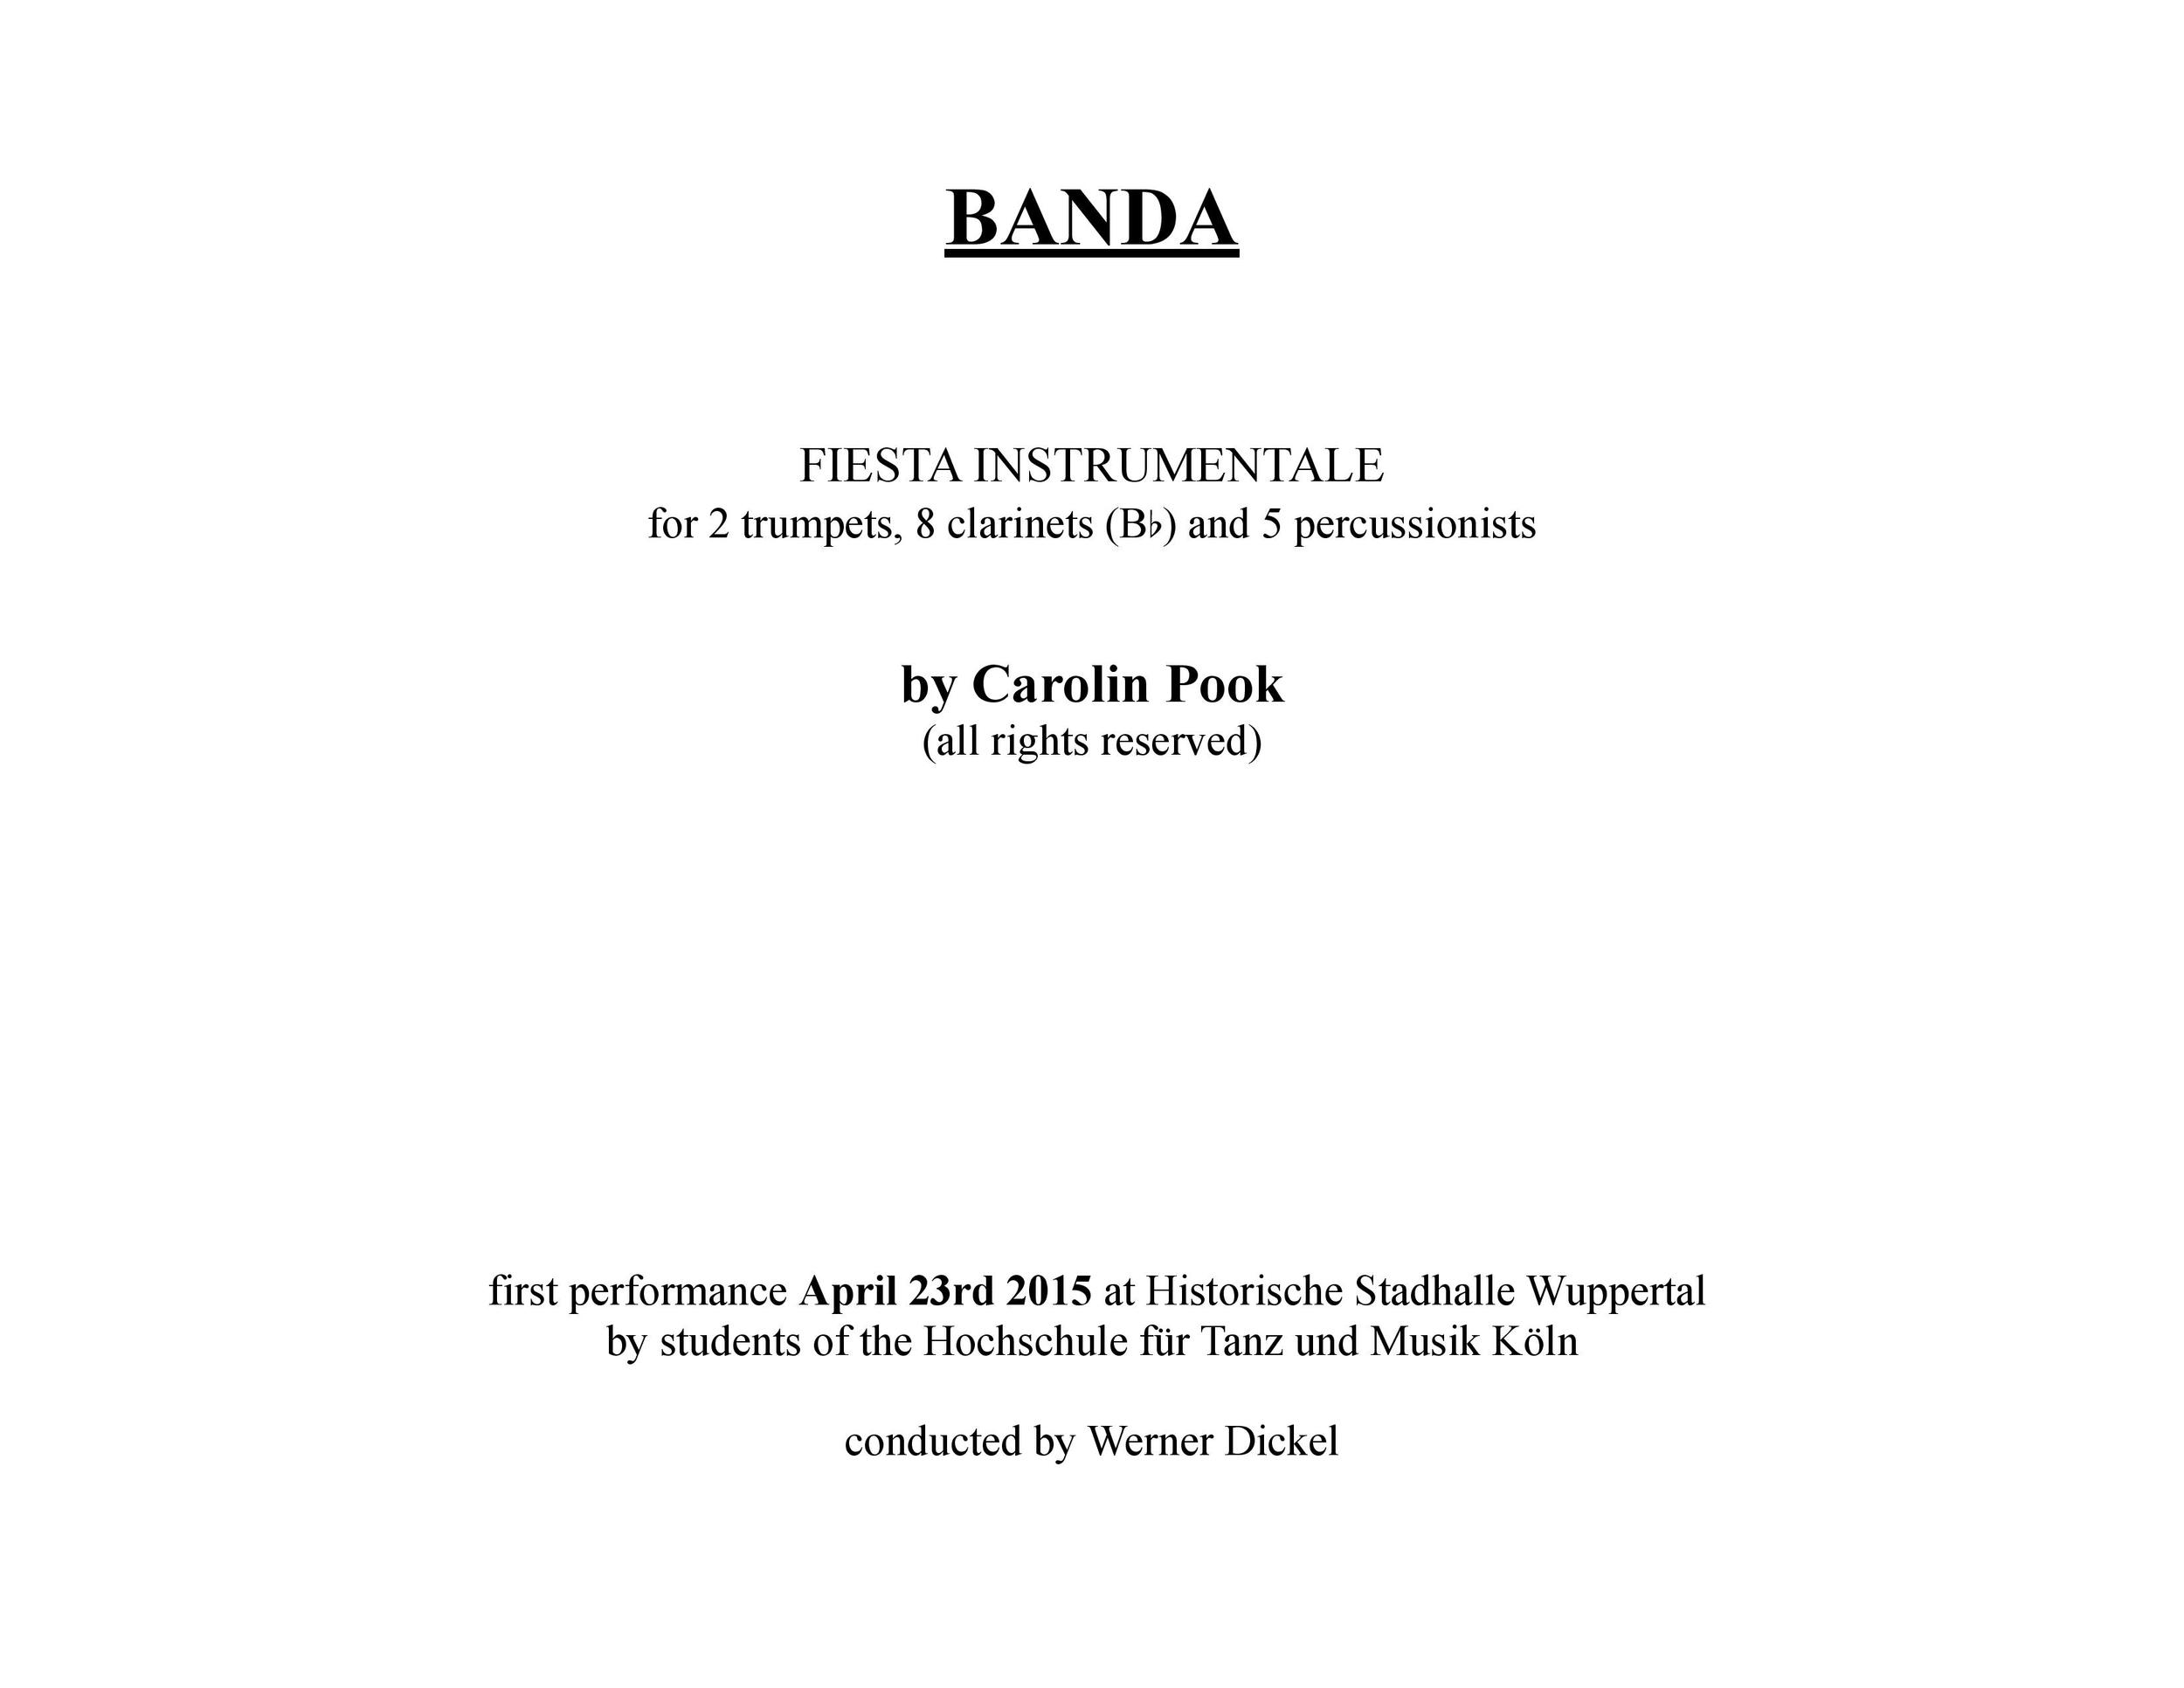 BANDA_final copy-page-001.jpg